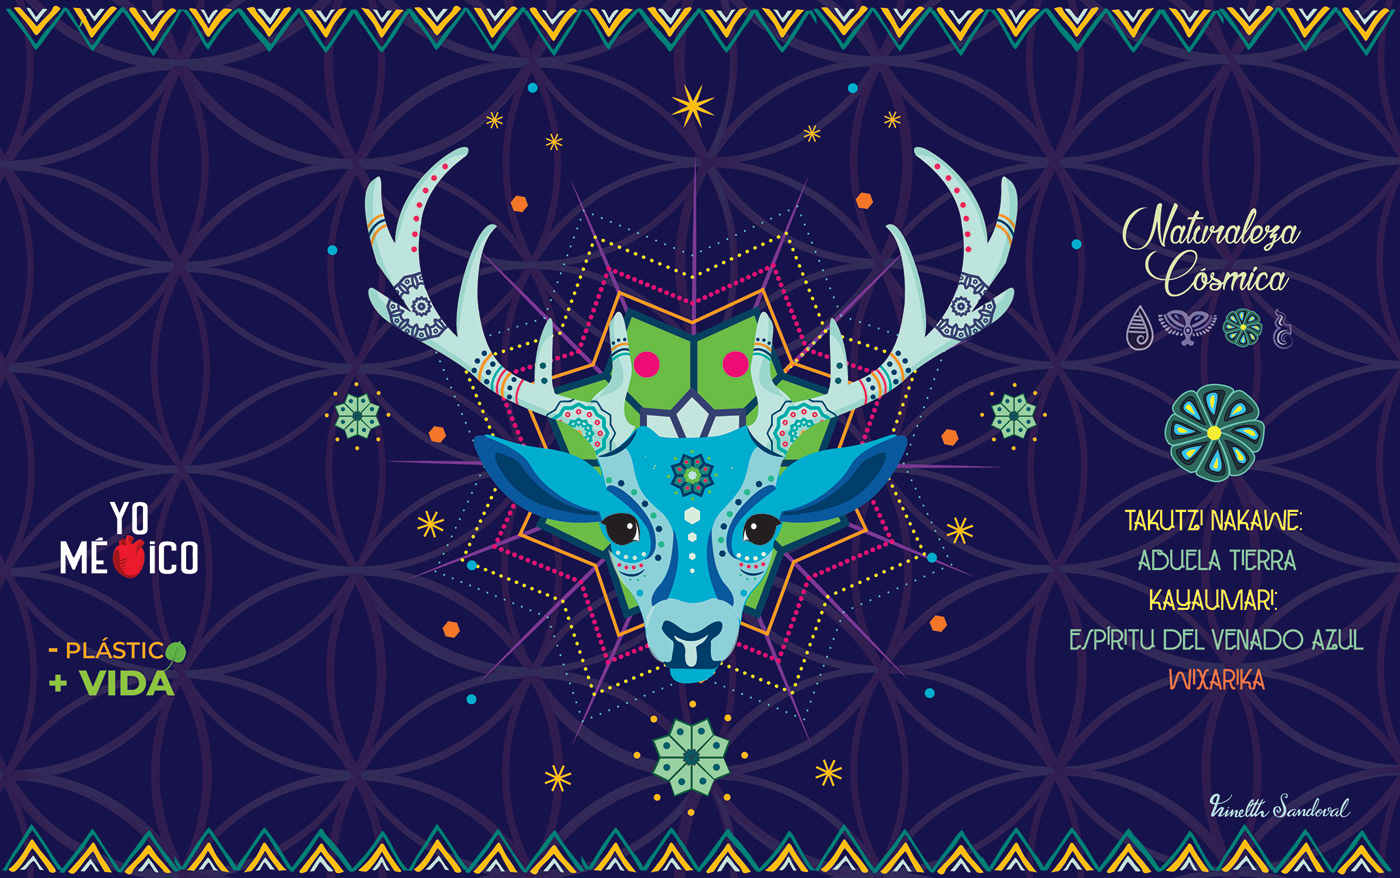 Ilustración de Kauyumari, el Venado Azul, espíritu Wixarika relacionado con el peyote o hikuri
